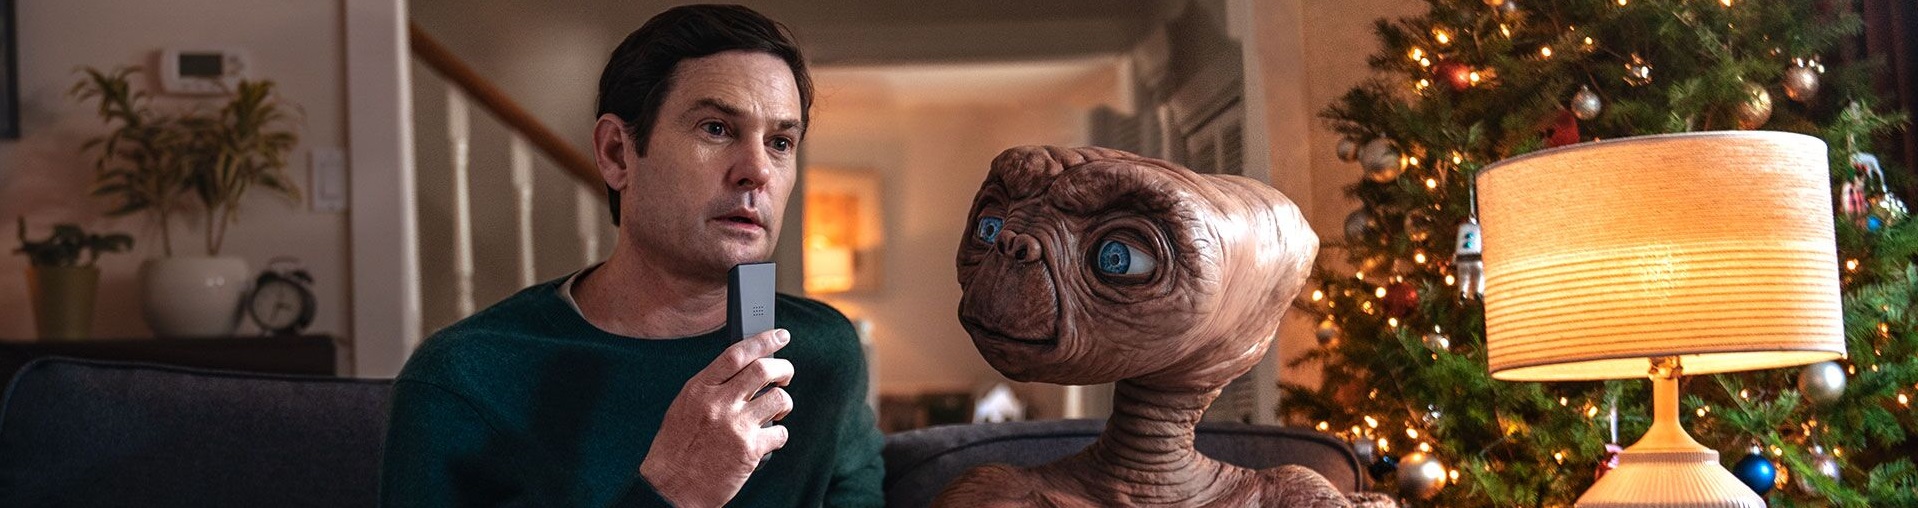 Descubra por onde andou o garoto de ‘E.T.’ nos últimos 37 anos